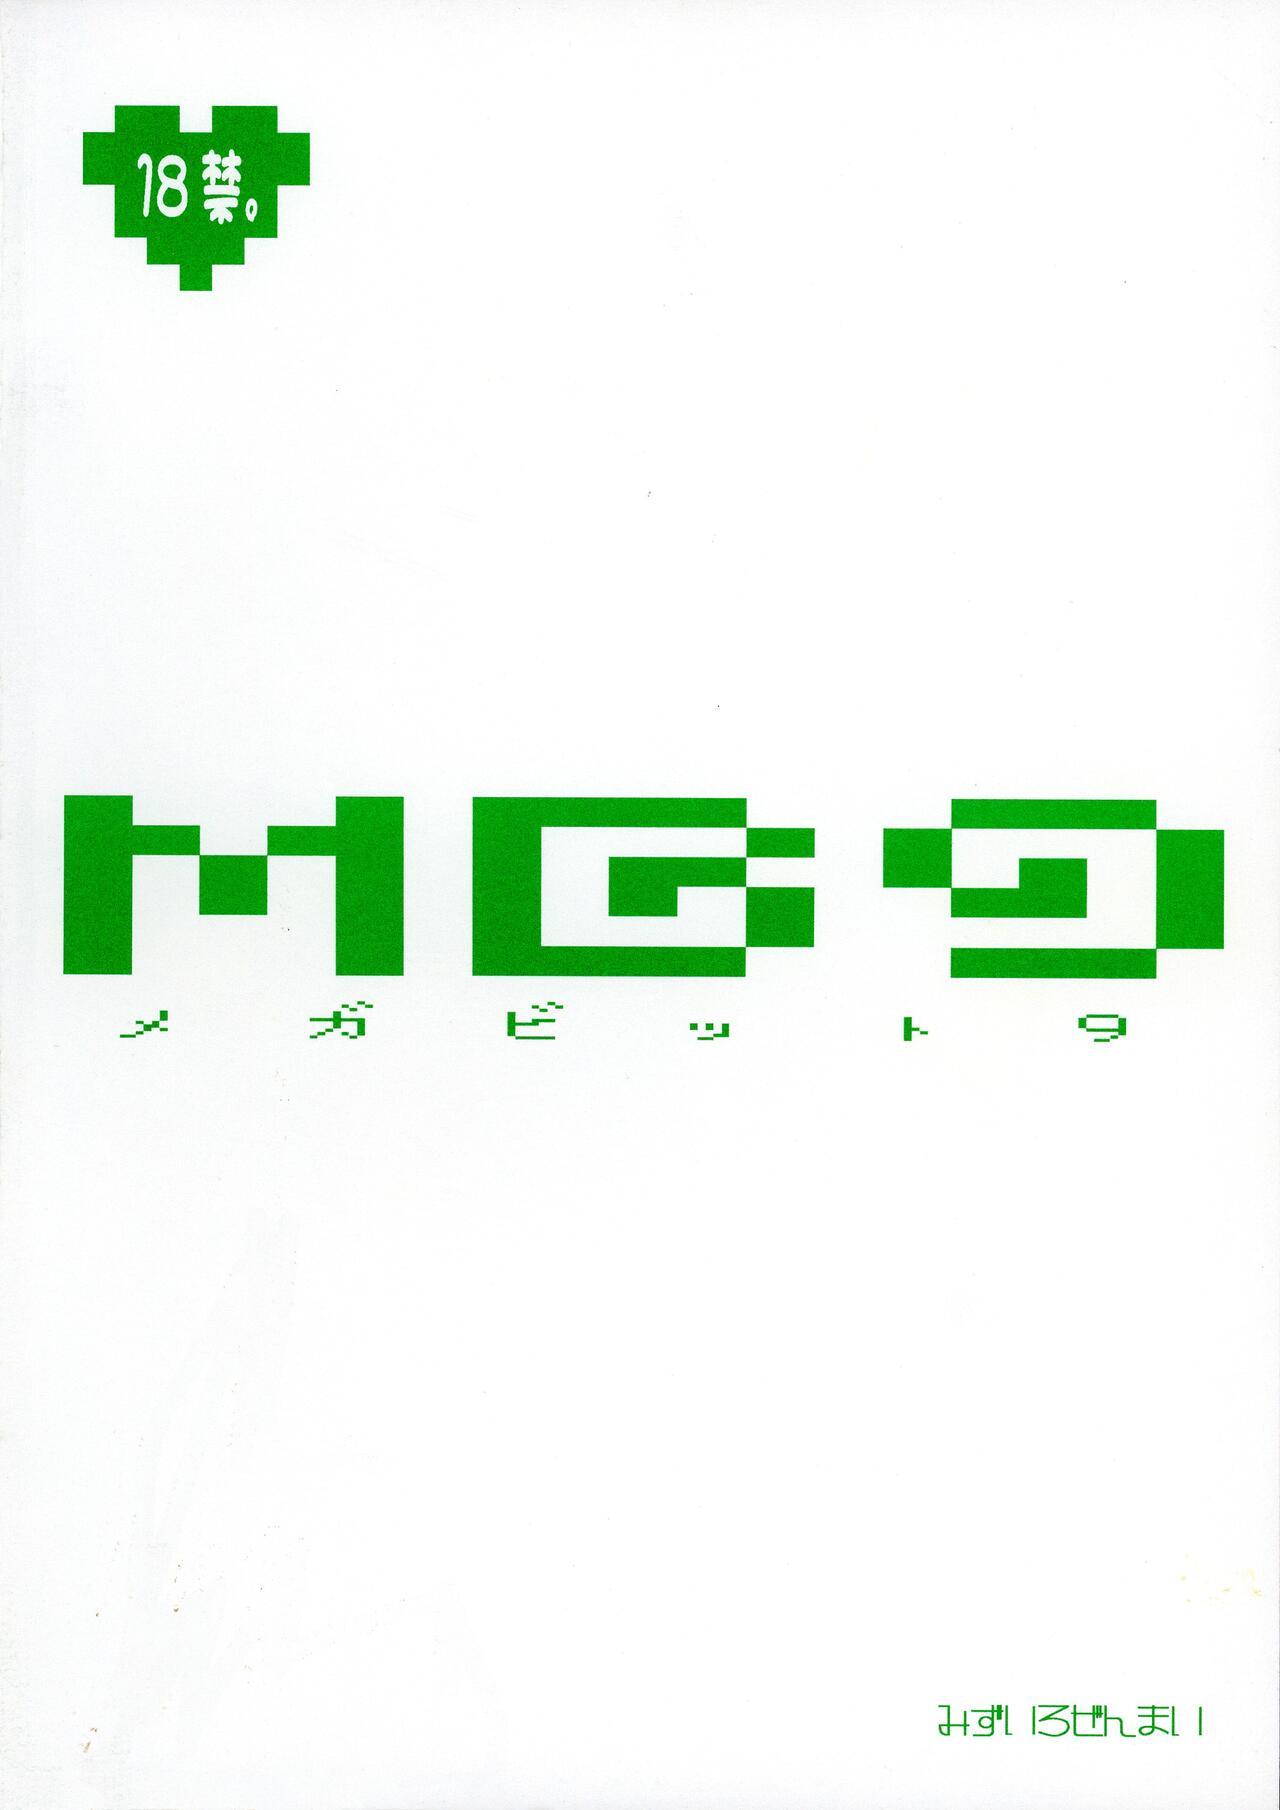 Fit MG Megabit 9 - Dragon quest Gays - Picture 2